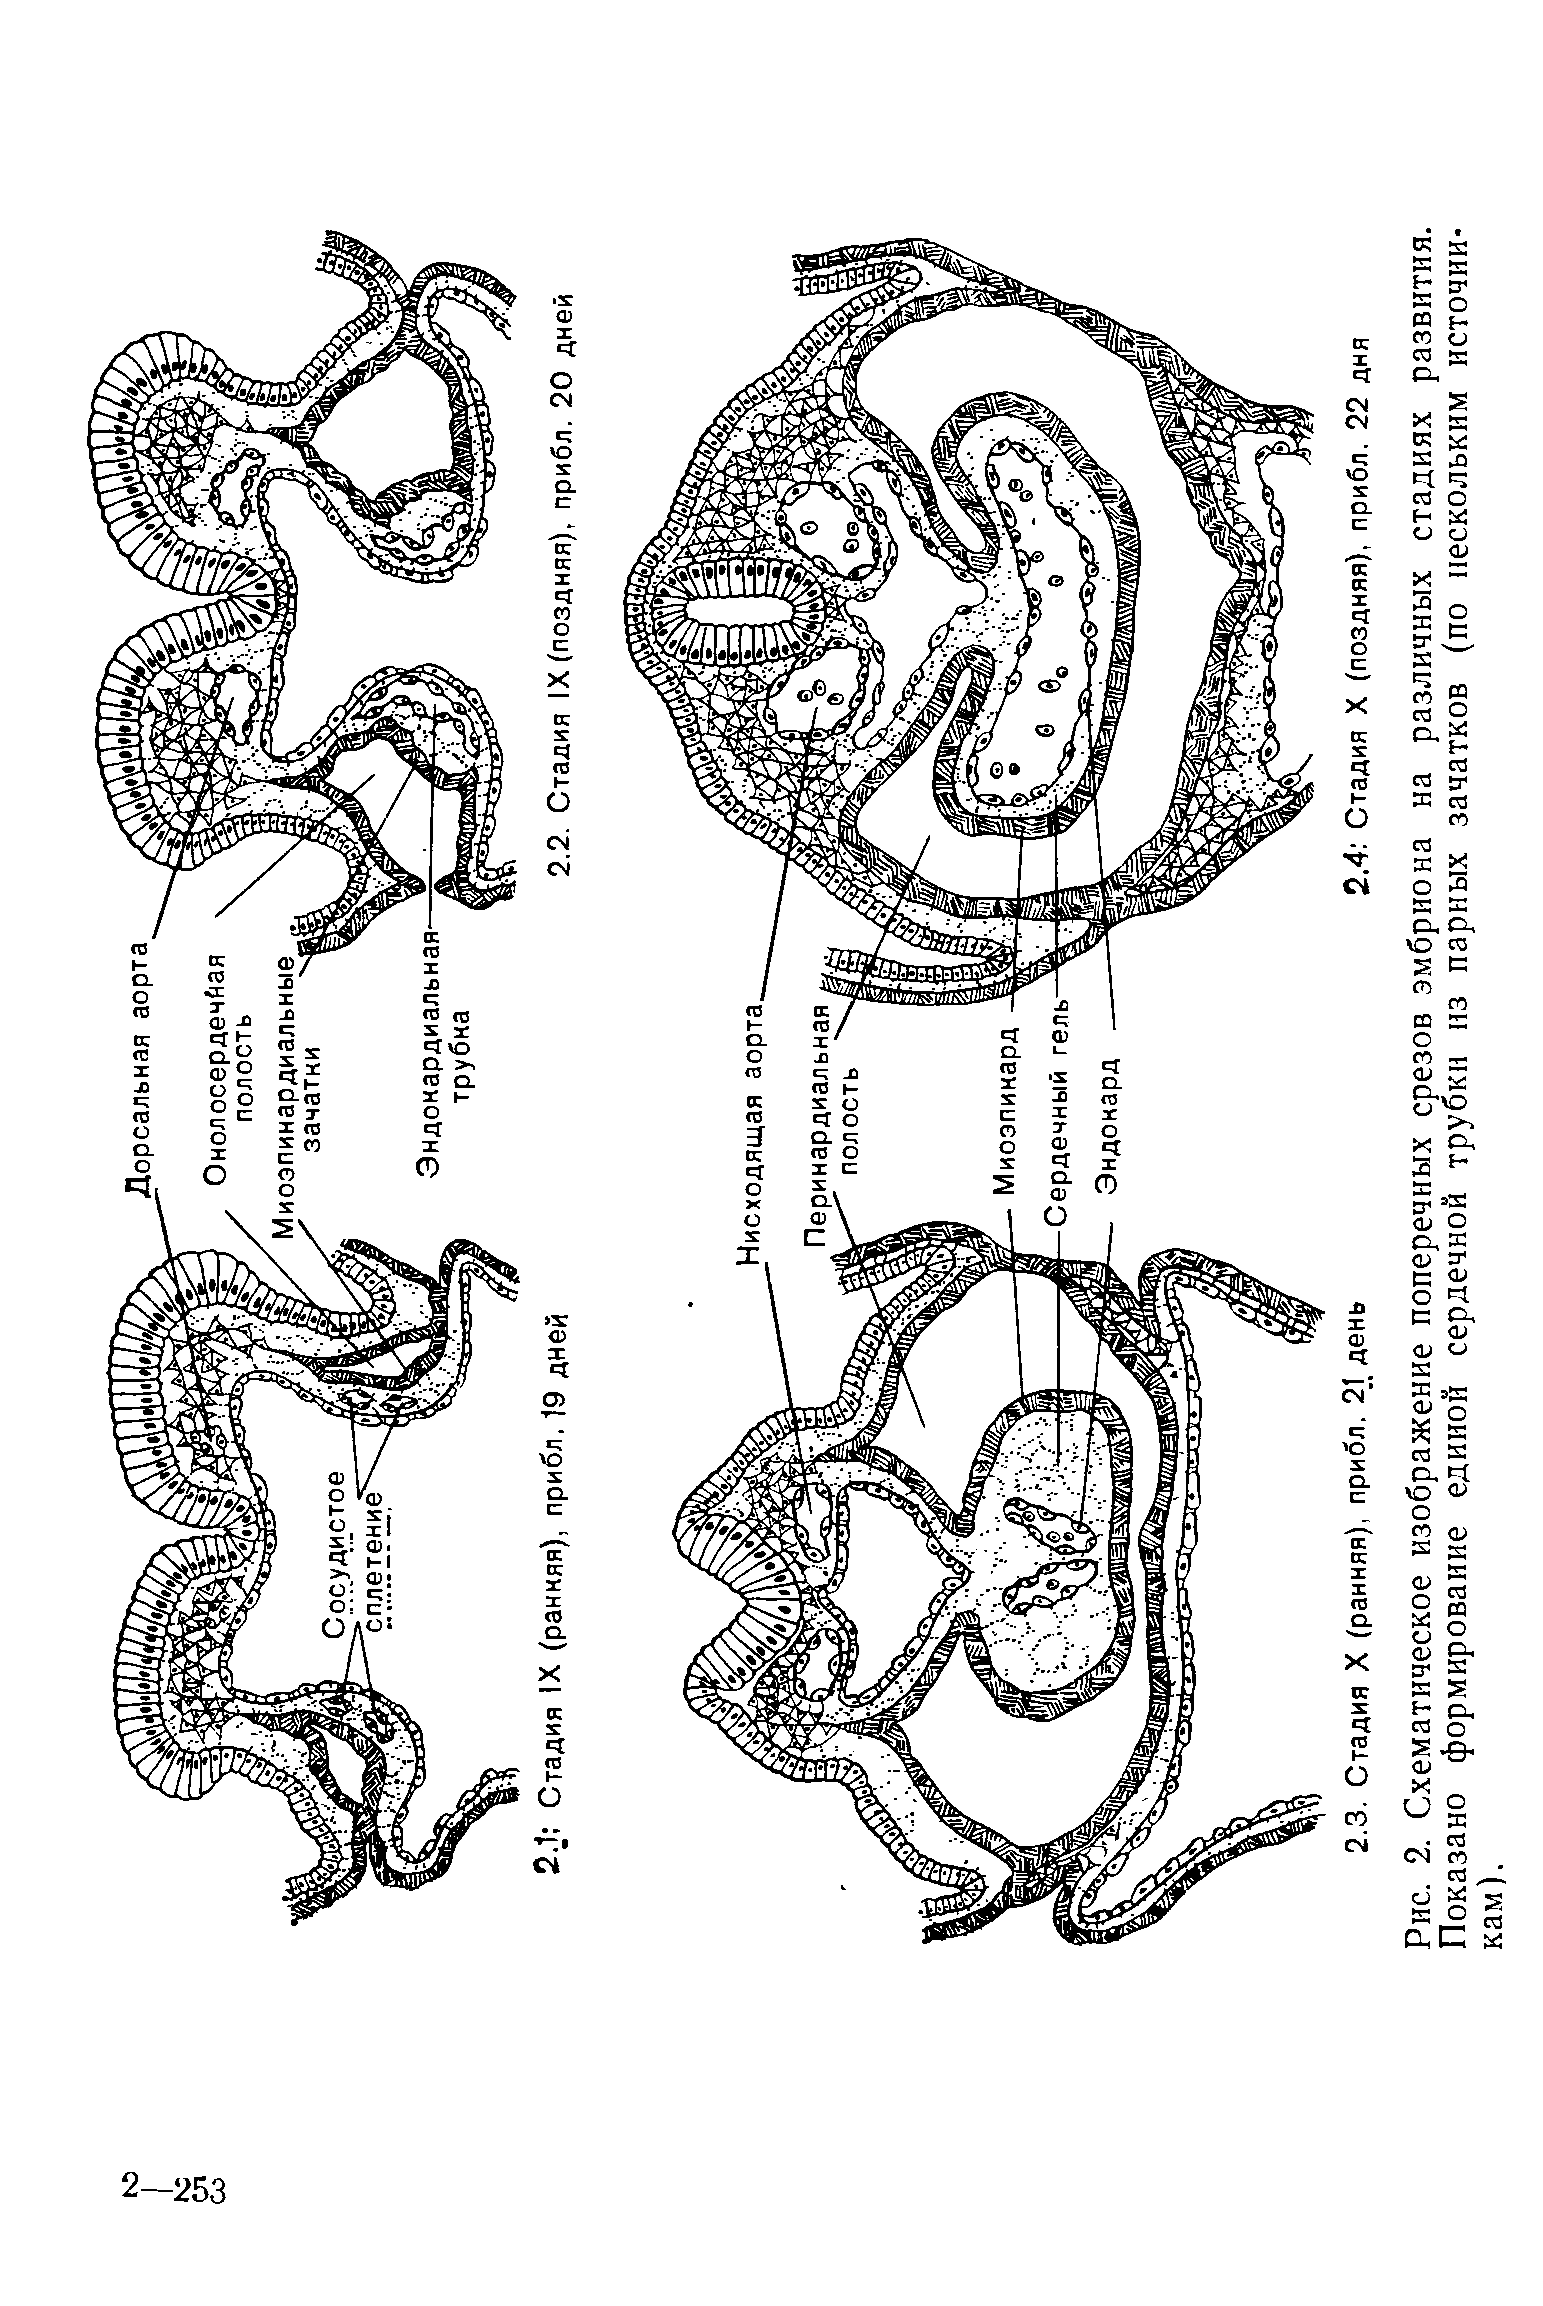 Рис. 2. Схематическое изображение поперечных срезов эмбриона на различных стадиях развития. Показано формирование единой сердечной трубки из парных зачатков (по нескольким источникам).